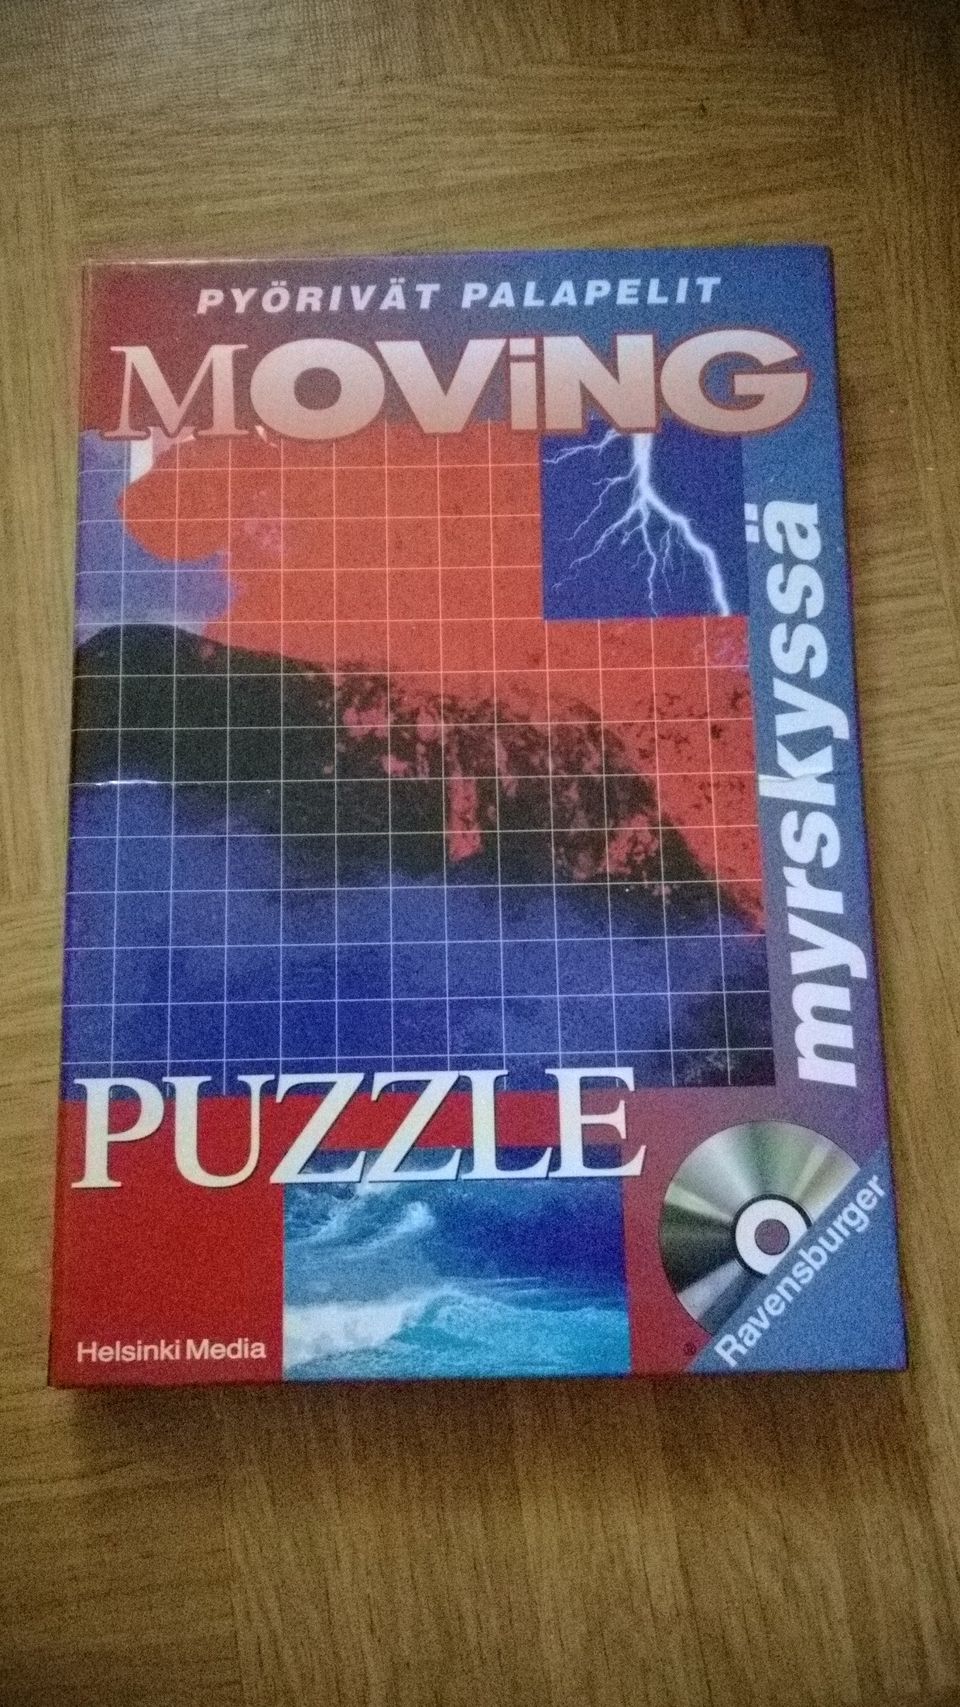 Moving Puzzle-Pyörivät palapelit Myrskyssä, dvd